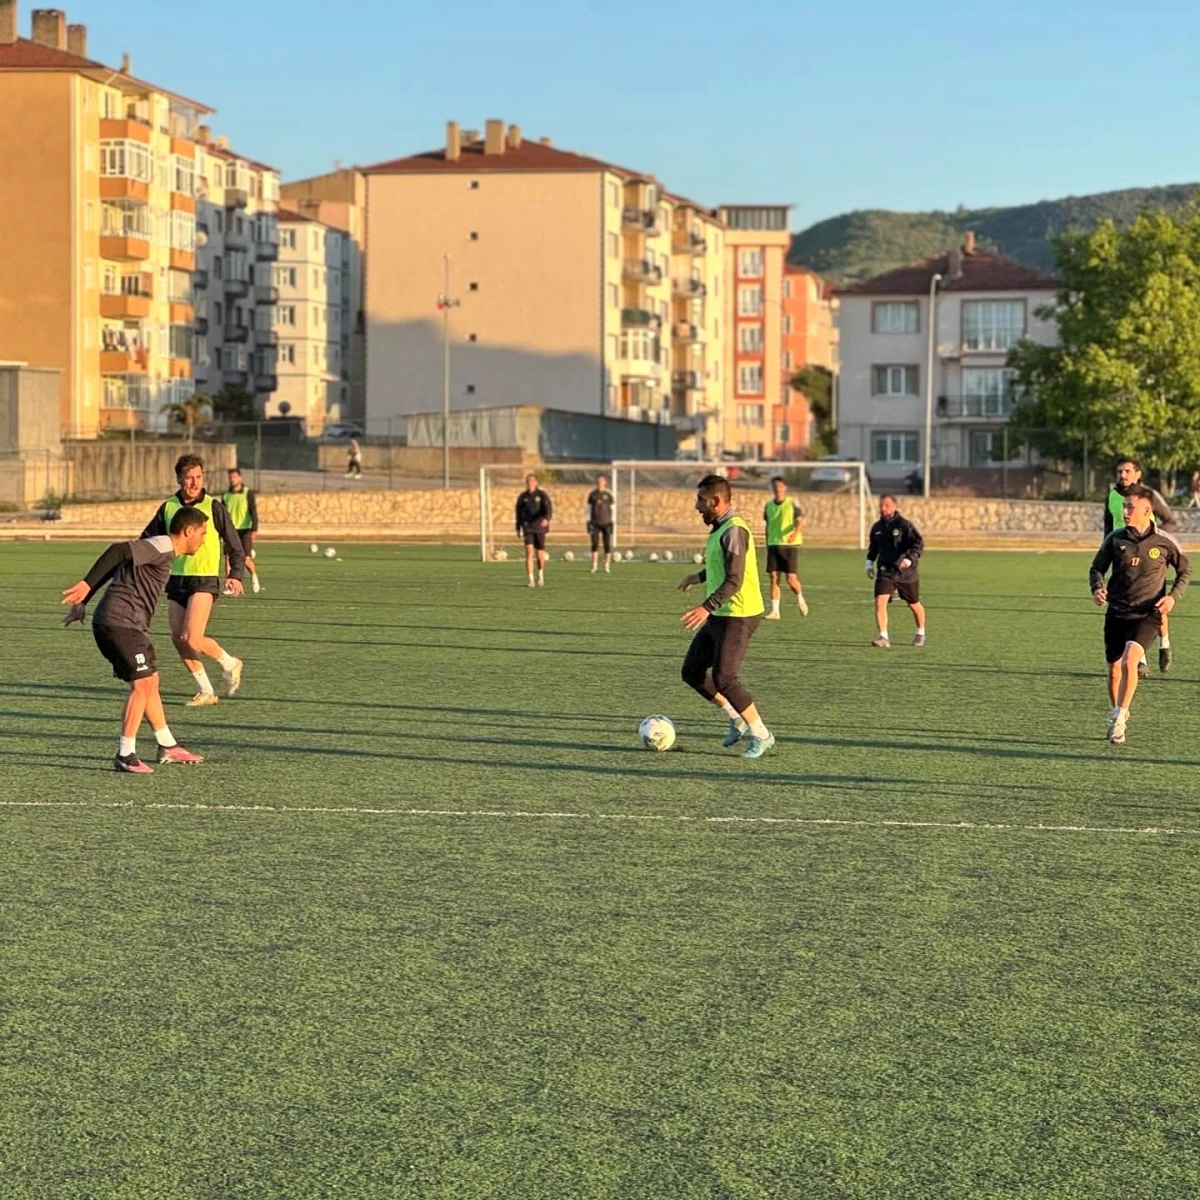 Söğütspor, Vitraspor ile oynayacağı şampiyonluk maçına hazırlanıyor